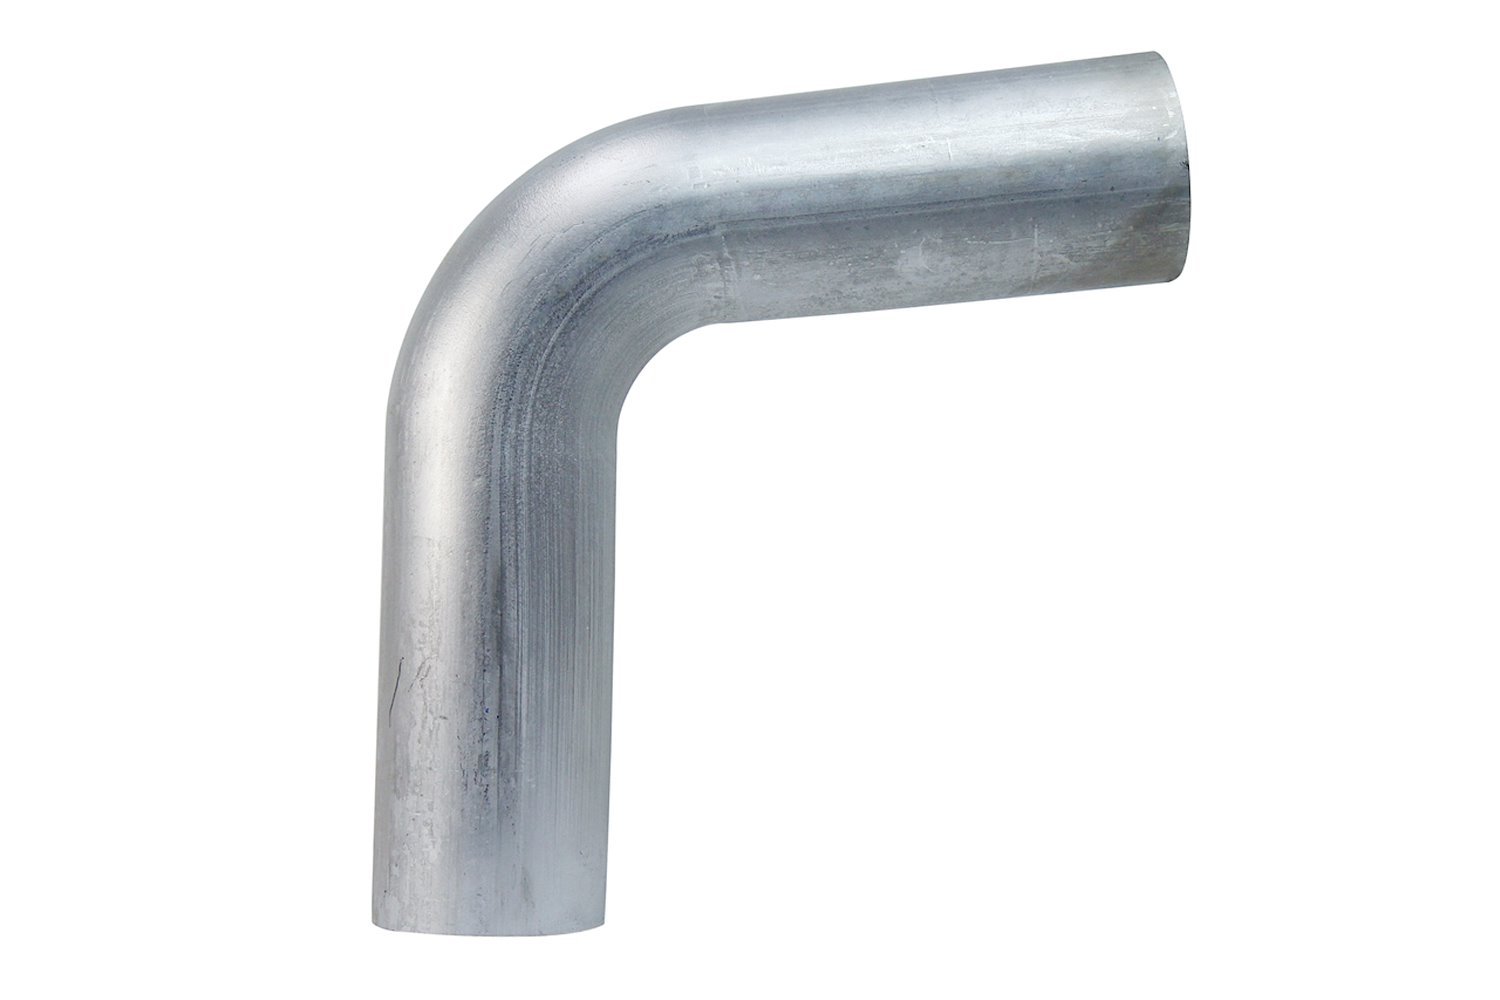 AT80-275-CLR-43 Aluminum Elbow Tube, 6061 Aluminum, 80-Degree Bend Elbow Tubing, 2-3/4 in. OD, Large Radius, 4-5/16 in. CLR